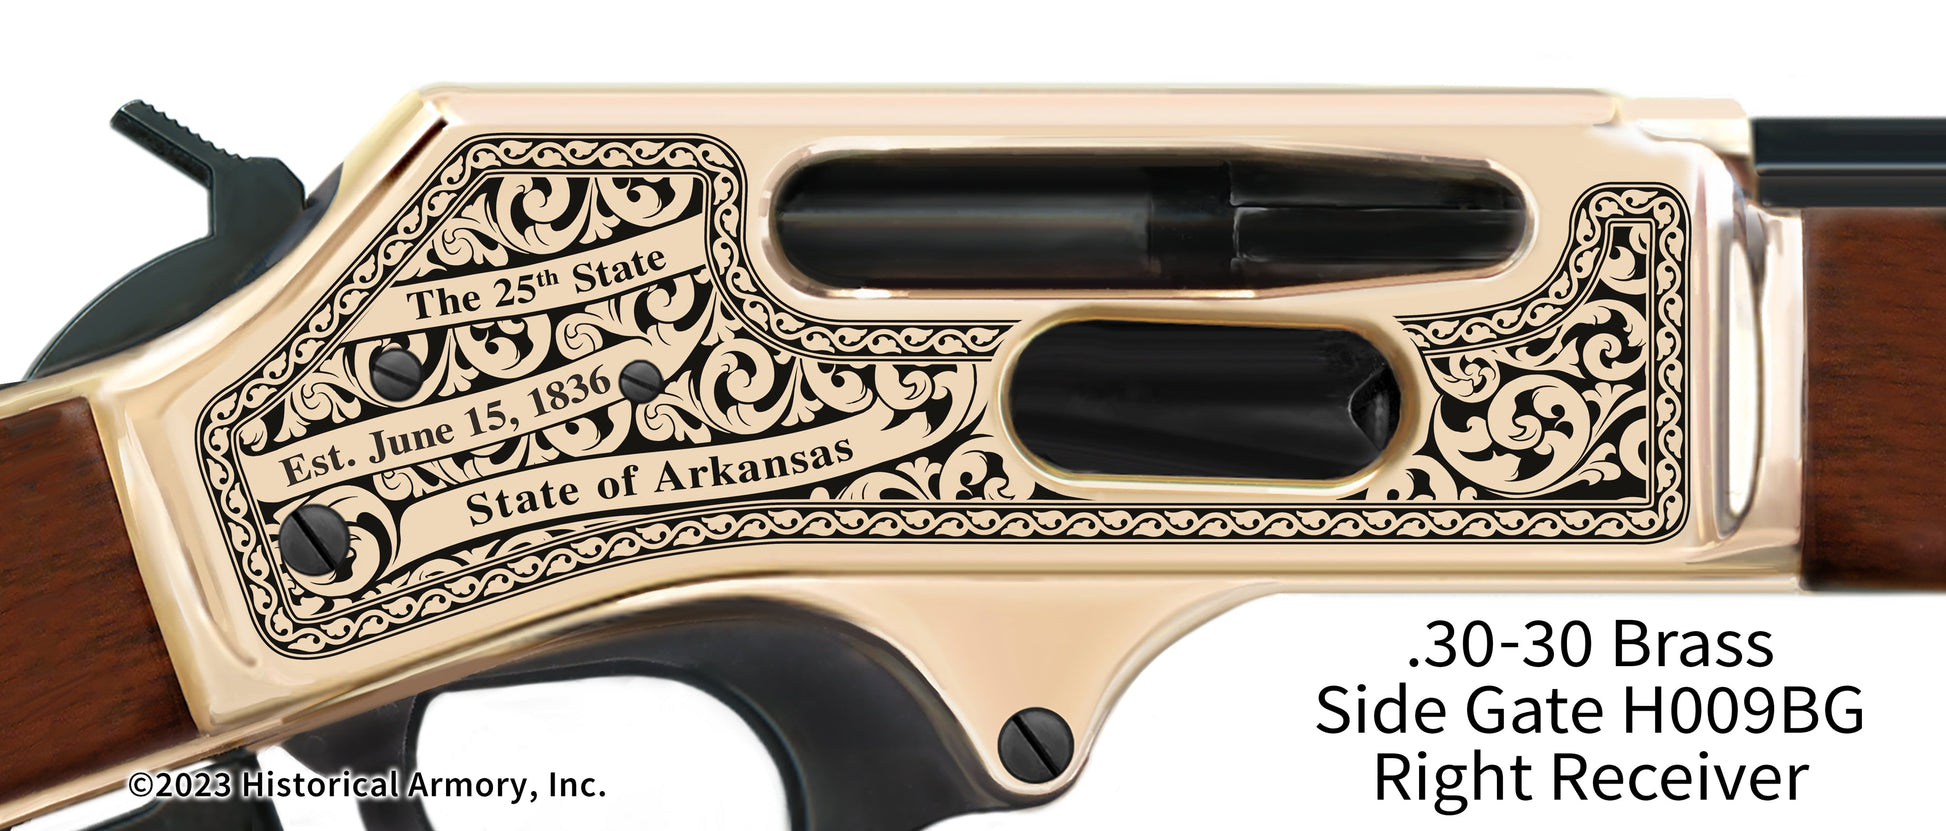 Greene County Arkansas Engraved Henry .30-30 Brass Side Gate Rifle